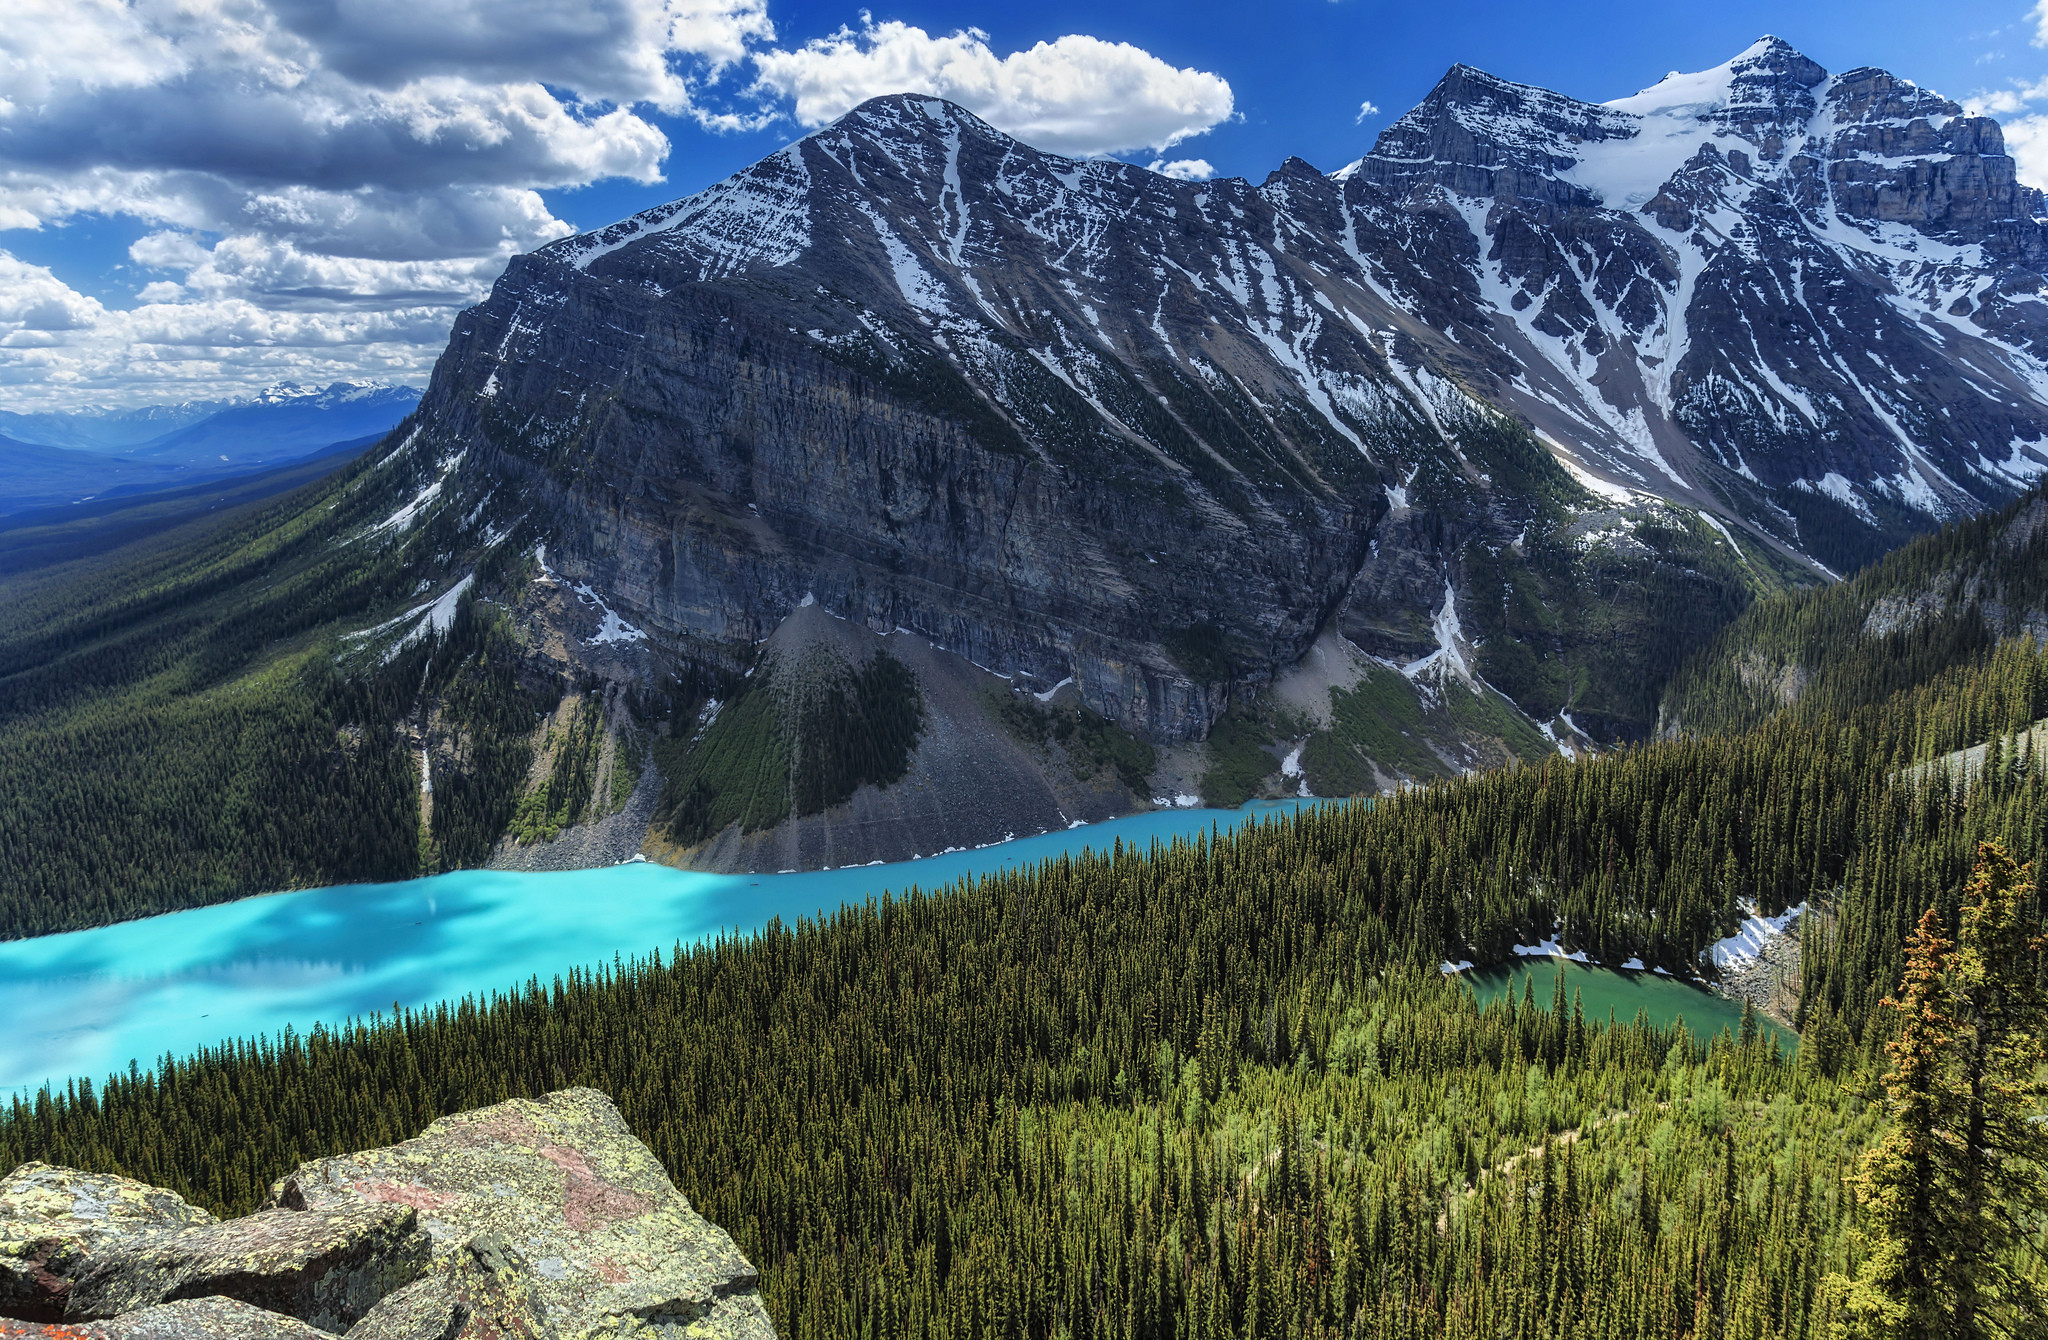 Wallpapers landscapes Banff National Park Alberta on the desktop